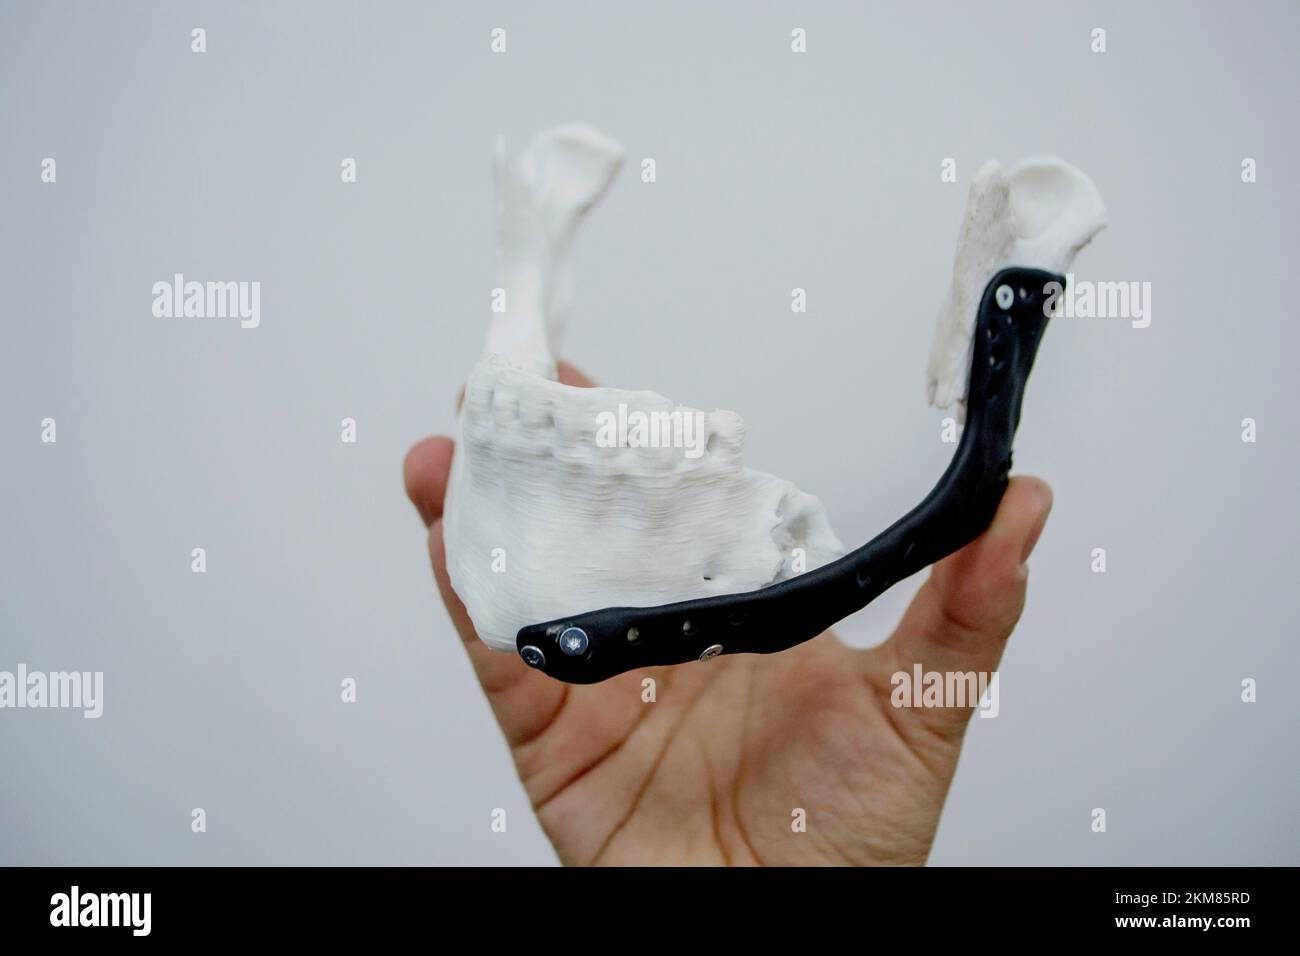 Personne tenant en main 3D prototype en plastique imprimé mâchoire inférieure humaine et implant médical en titane gros plan. Prothèse anatomique osseuse 3D imprimé à partir de poudre métallique. Prothèse orthopédique maxillo-faciale Banque D'Images